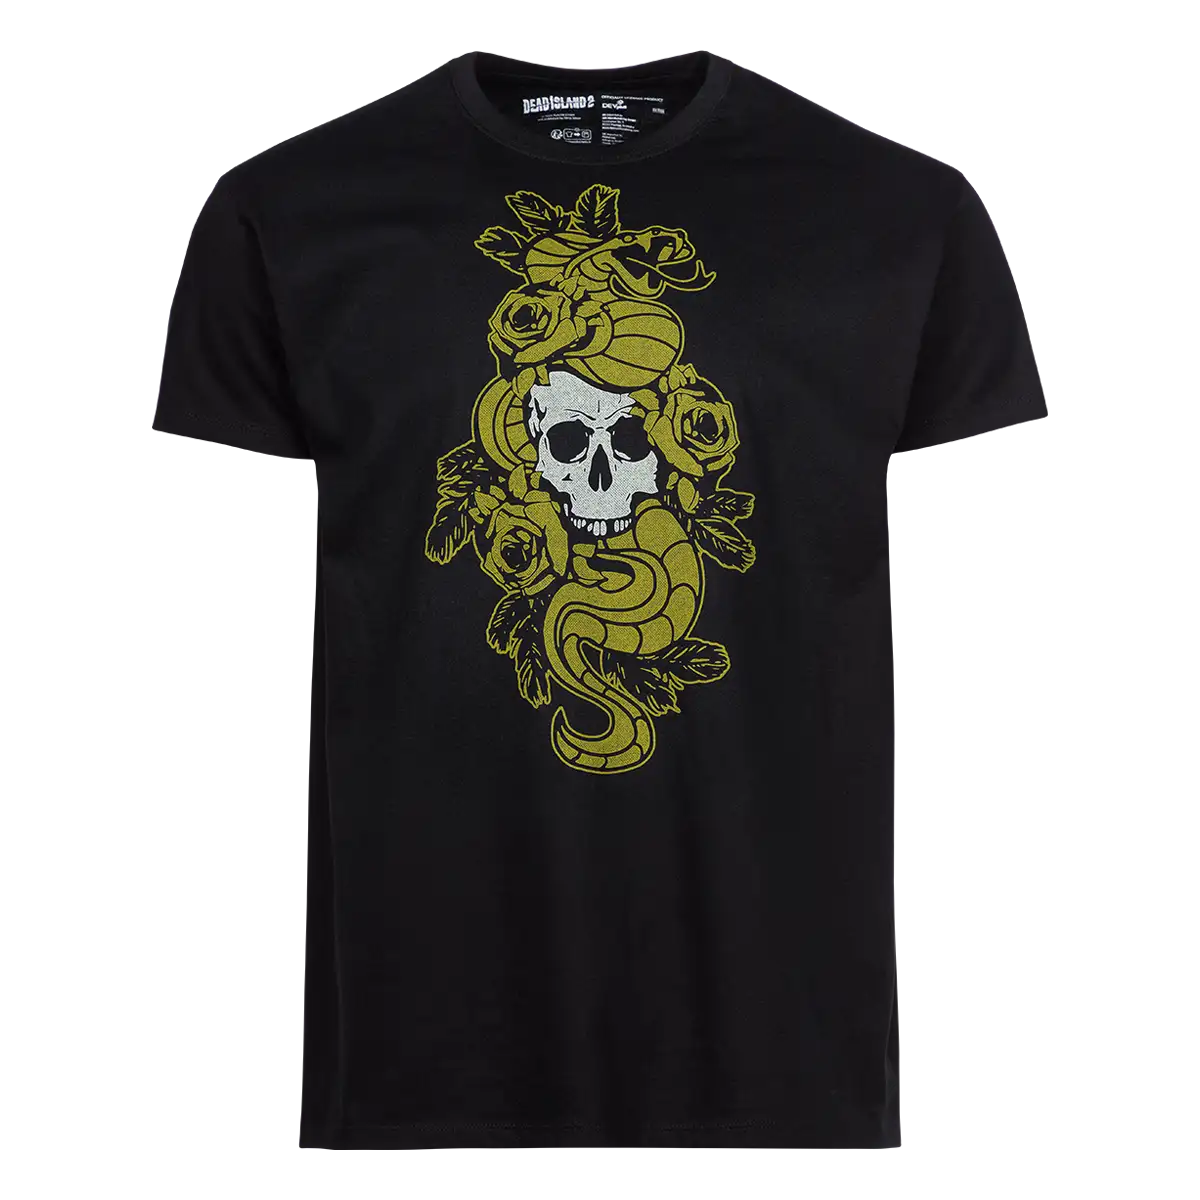 Dead Island 2 T-Shirt "Sam B" Cover